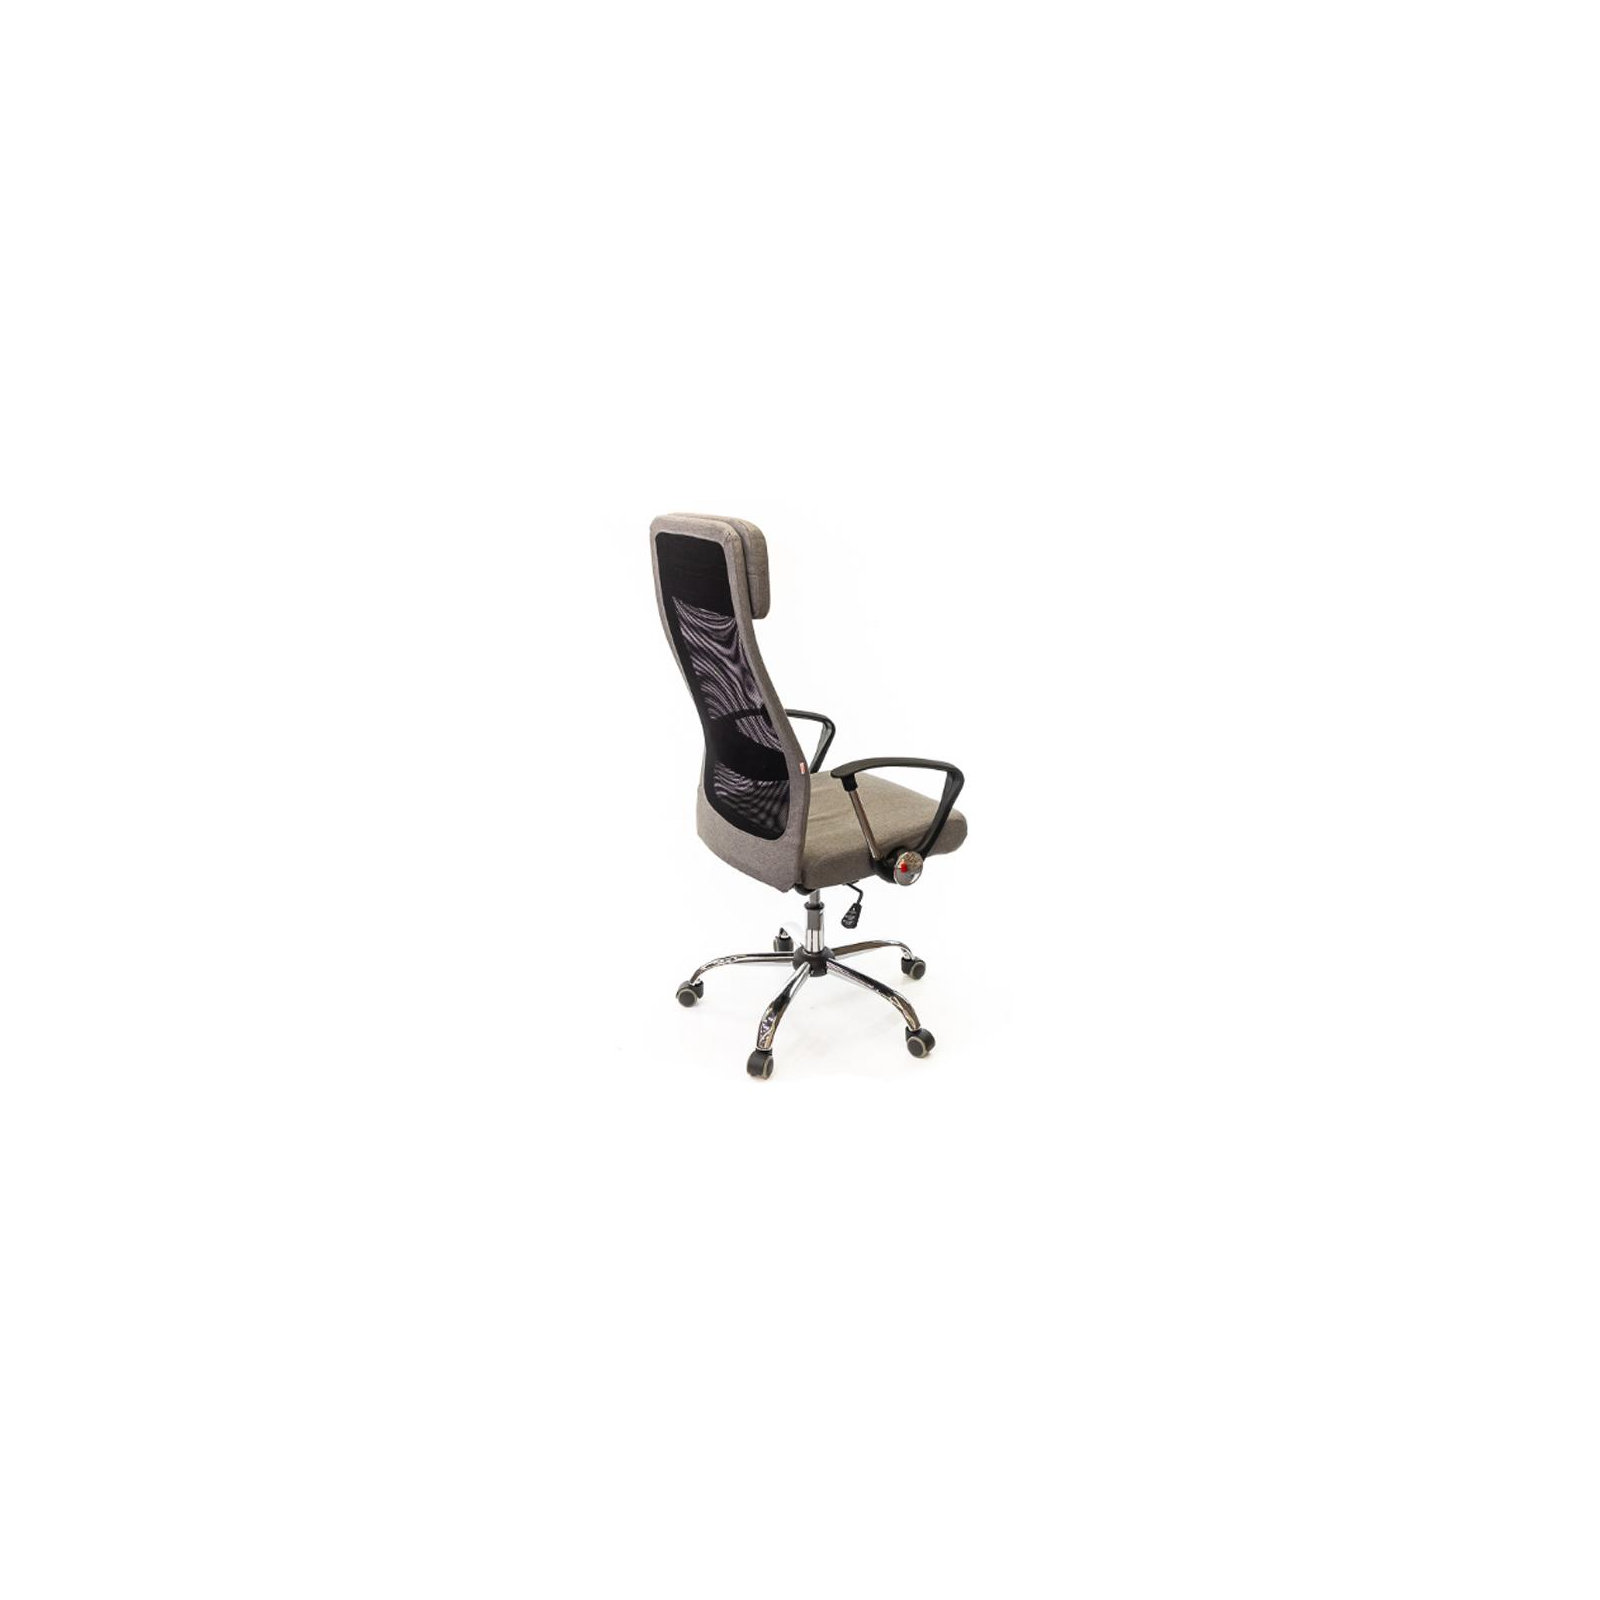 Офісне крісло Аклас Гилмор FX CH TILT Фиолетовое (11873) зображення 5